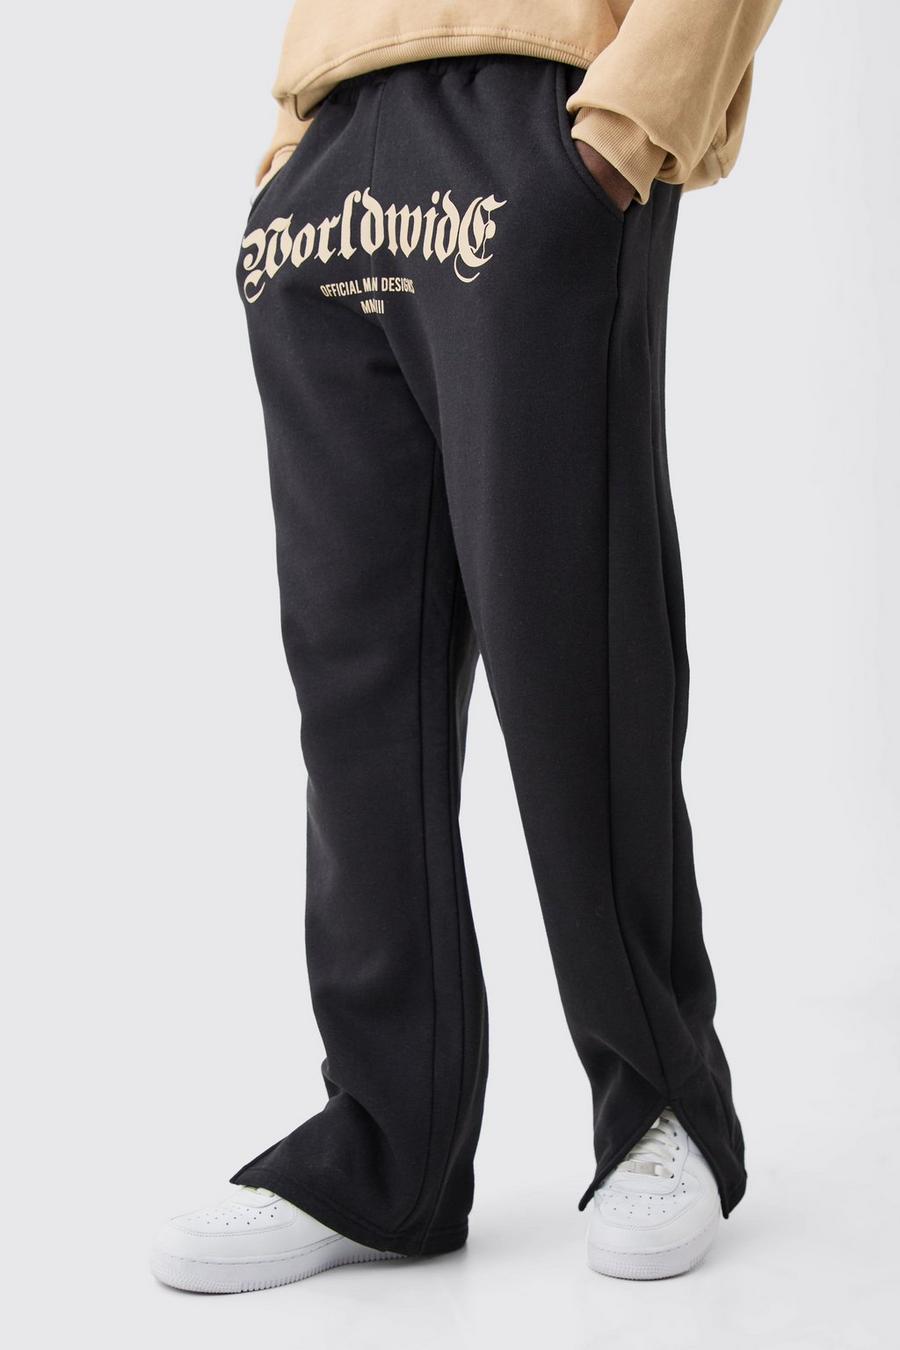 Pantalón deportivo con abertura en el bajo y estampado Worldwide en la entrepierna, Black image number 1